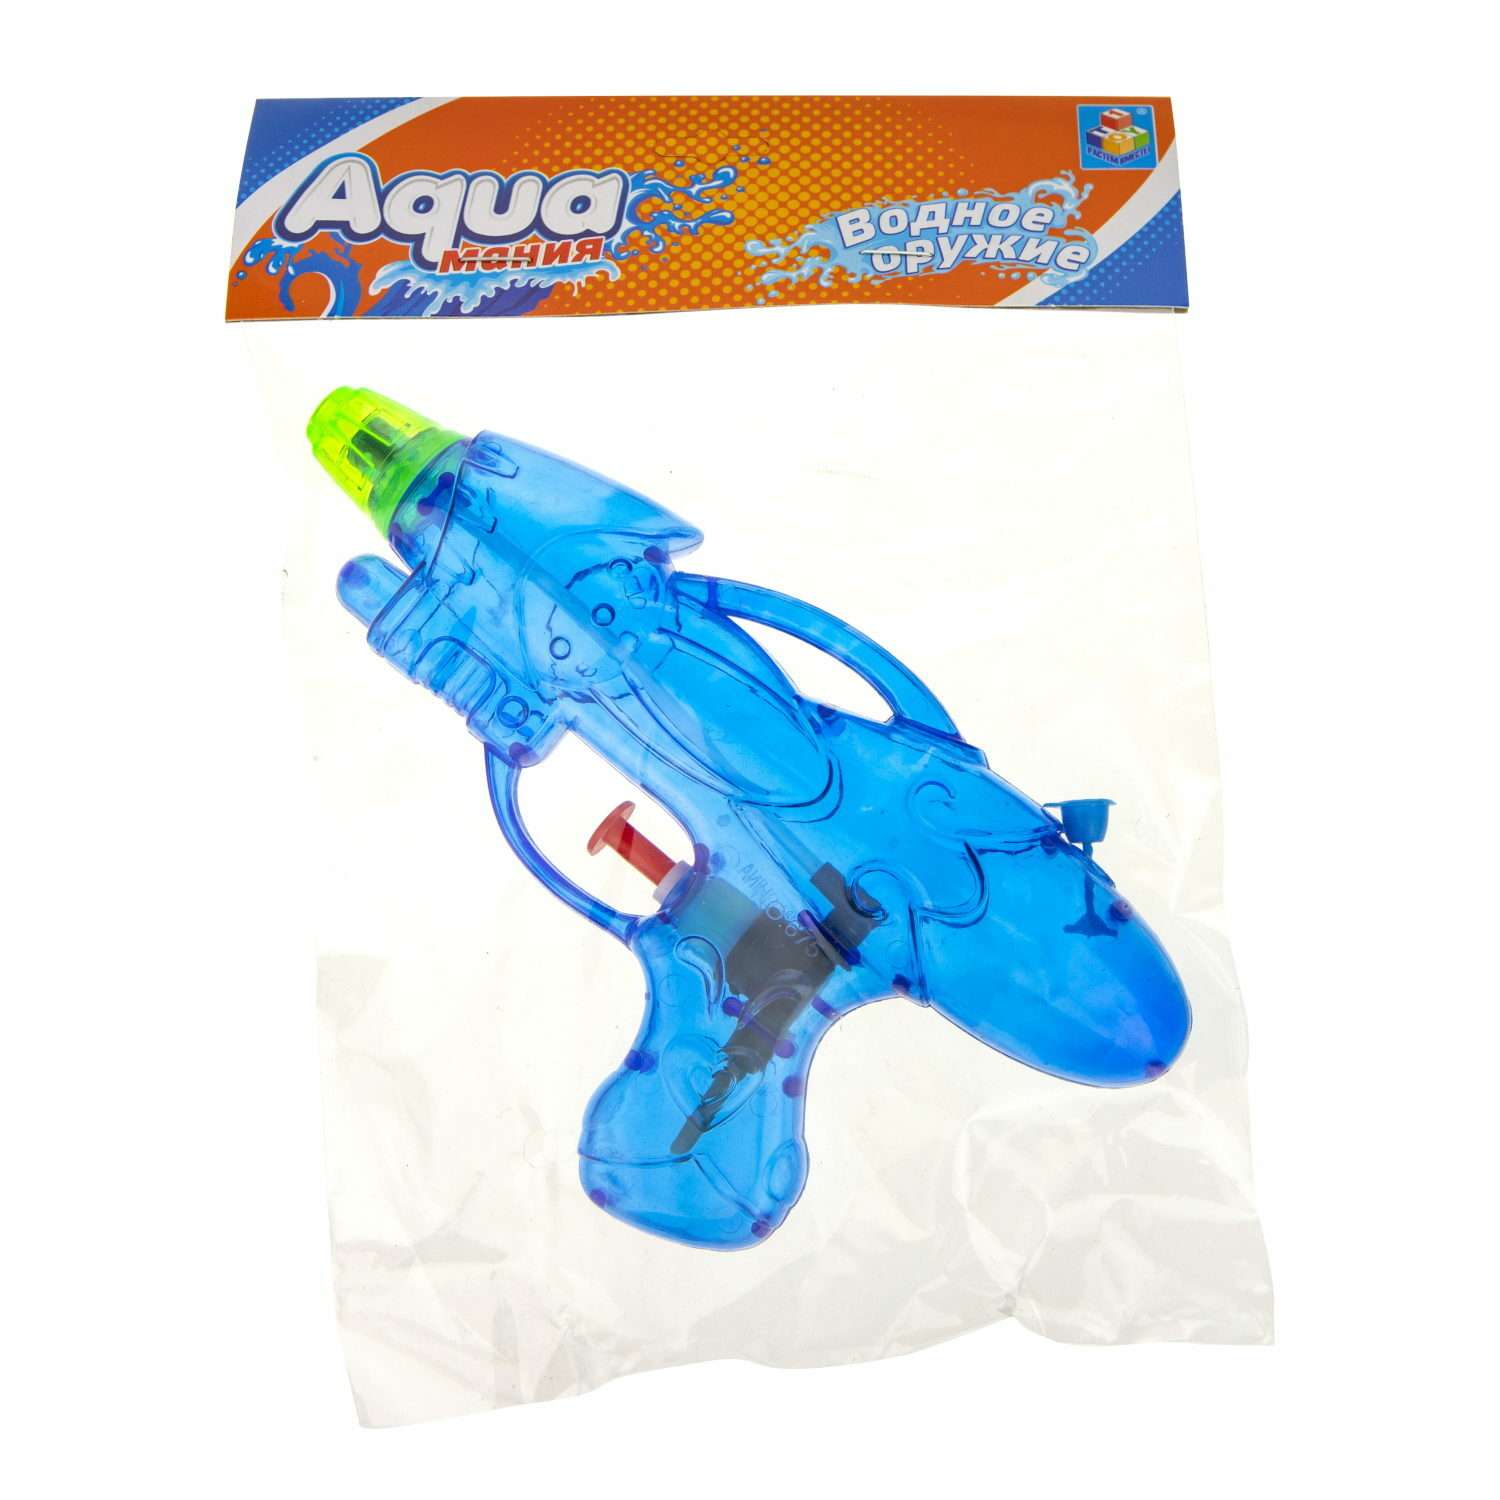 Водное оружие Aqua мания пистолет 18 см - фото 3